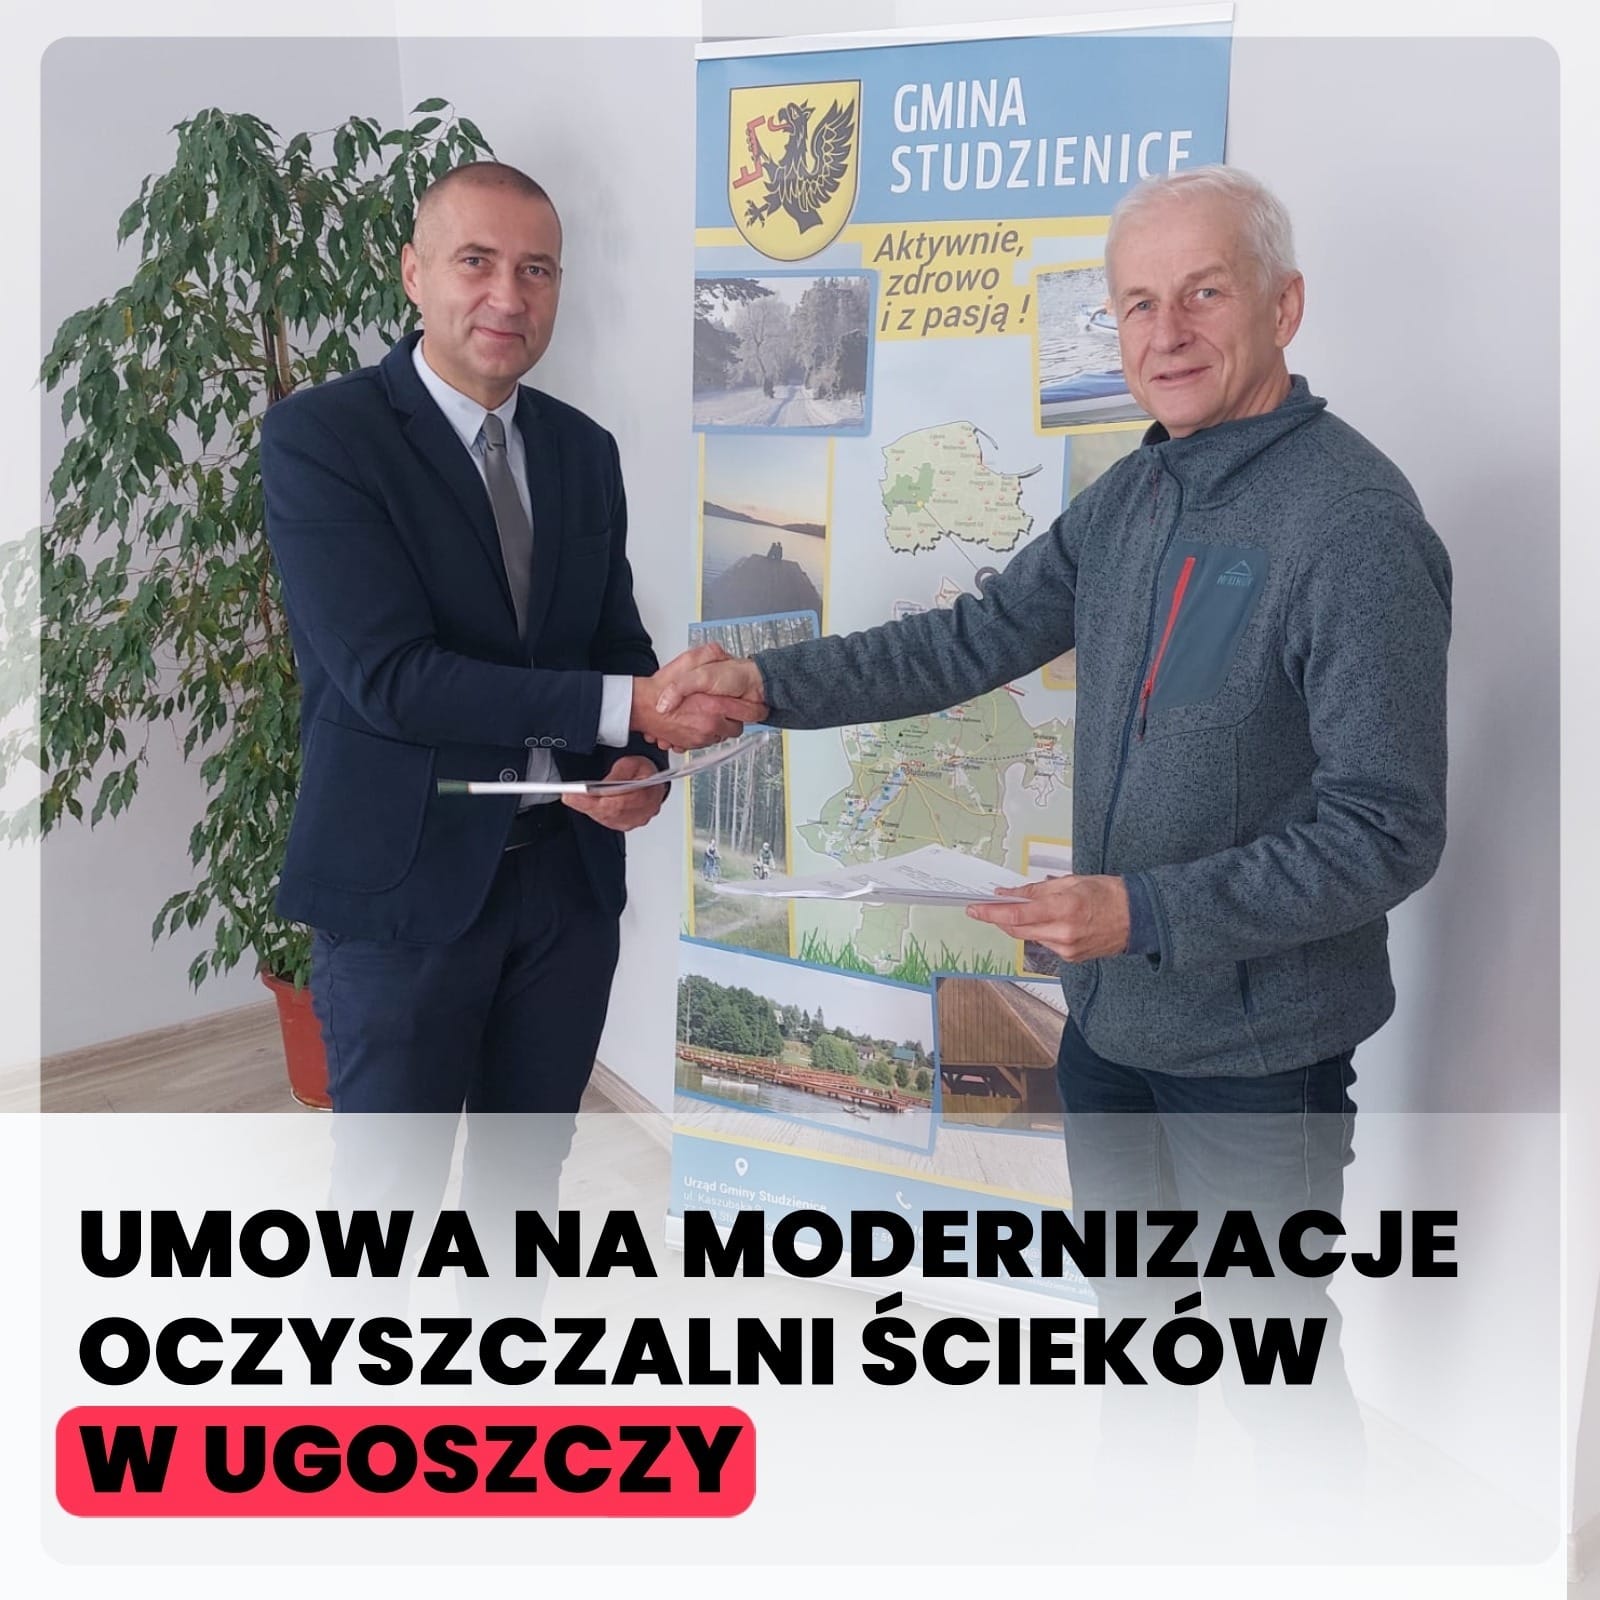 W ubiegły wtorek została podpisana umowa na modernizacje oczyszczalni ścieków w Ugoszczy. Inwestycja dofinansowana jest z Rządowego Funduszu "Polski Ład" w kwocie 5 mln zł.